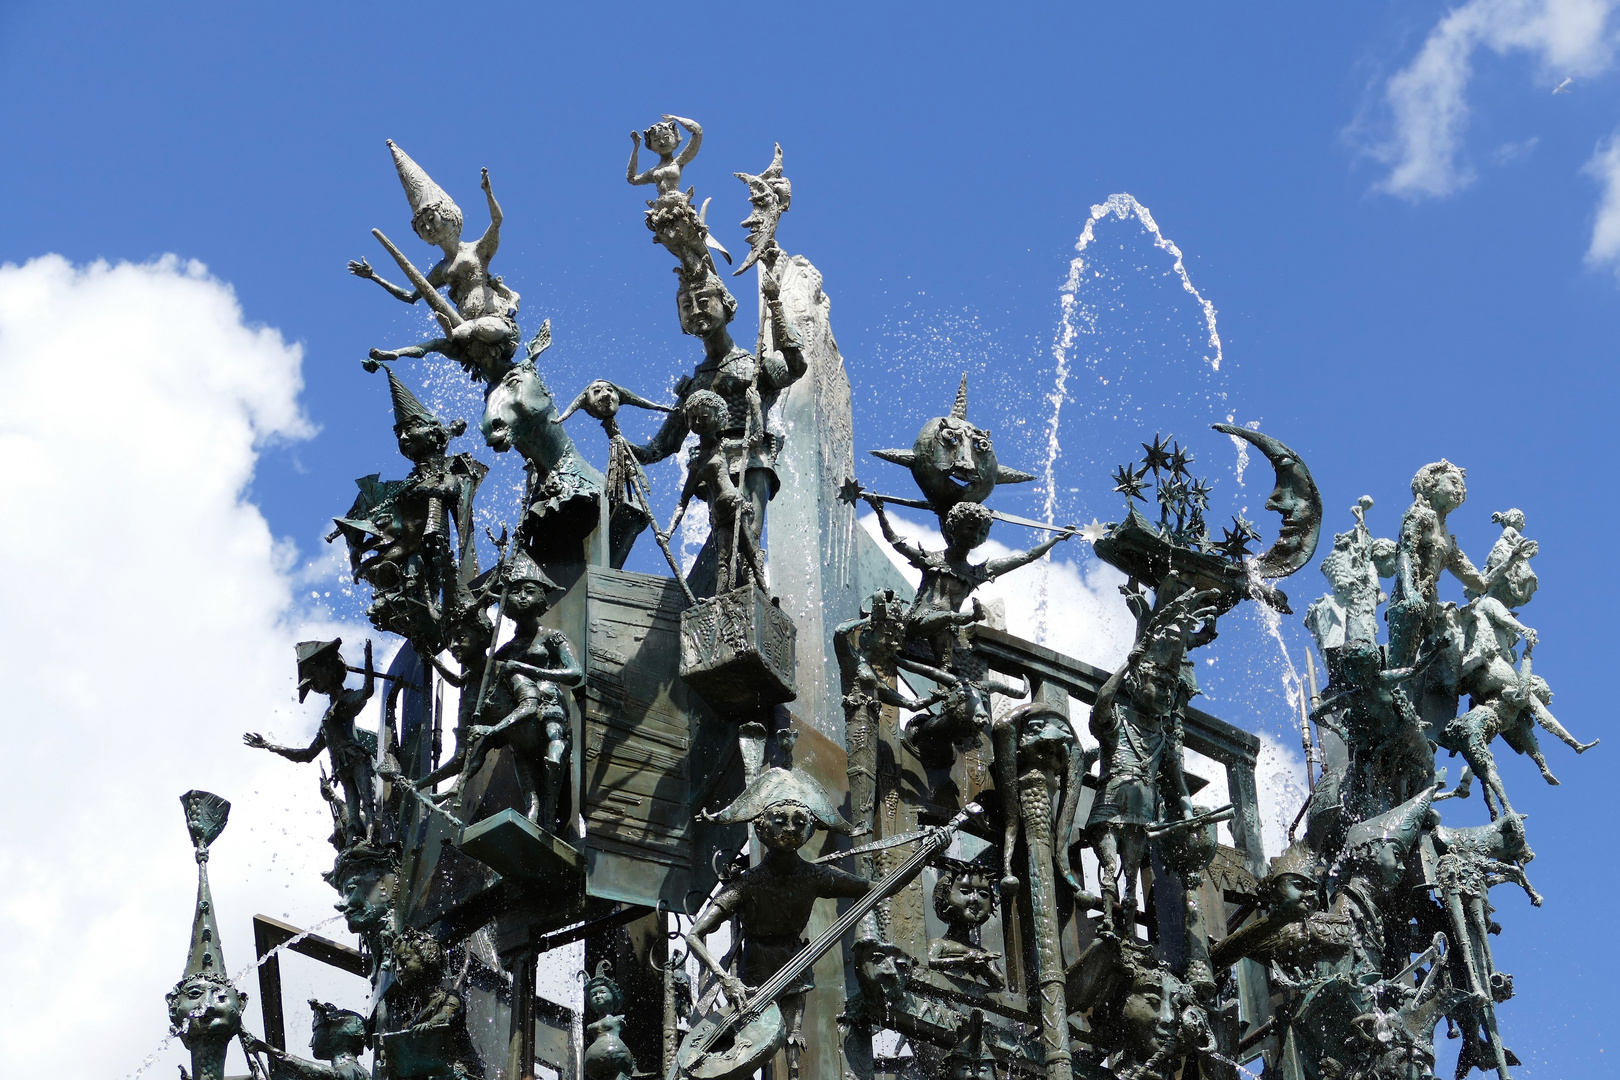  Detail Fastnachtsbrunnen - Mainz